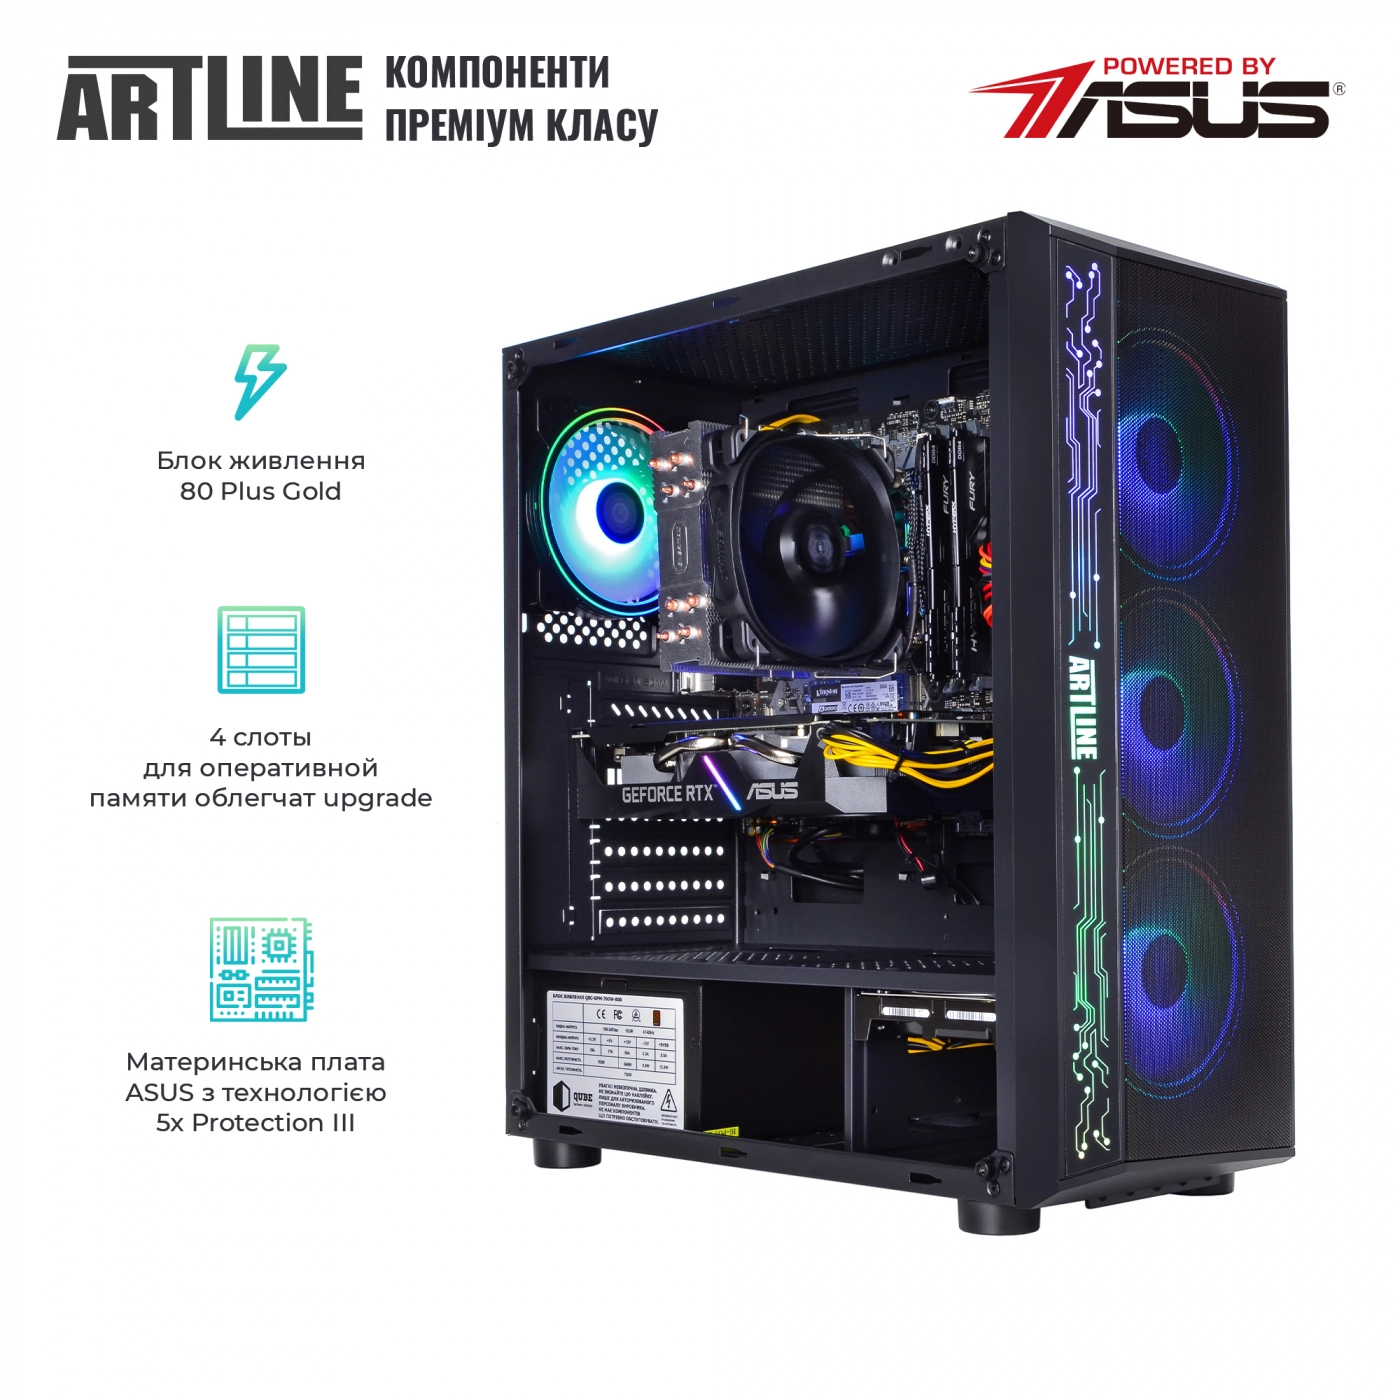 Купить Компьютер ARTLINE Gaming X73v11 - фото 2